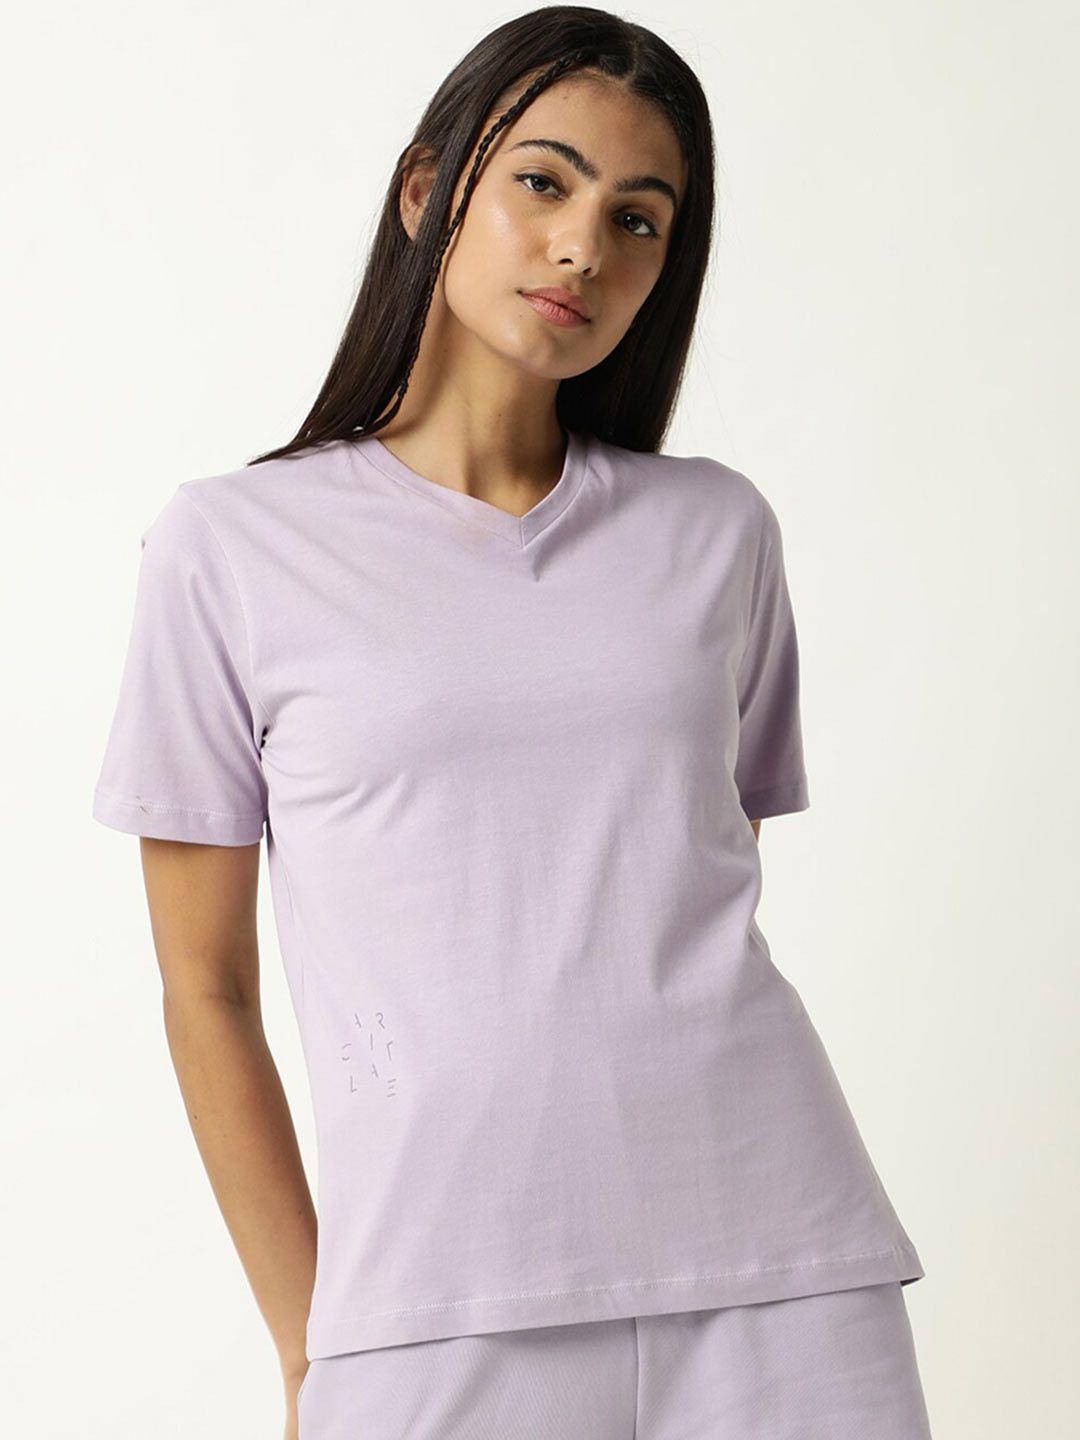 articale-women-lavender-solid-v-neck-slim-fit-cotton-t-shirt